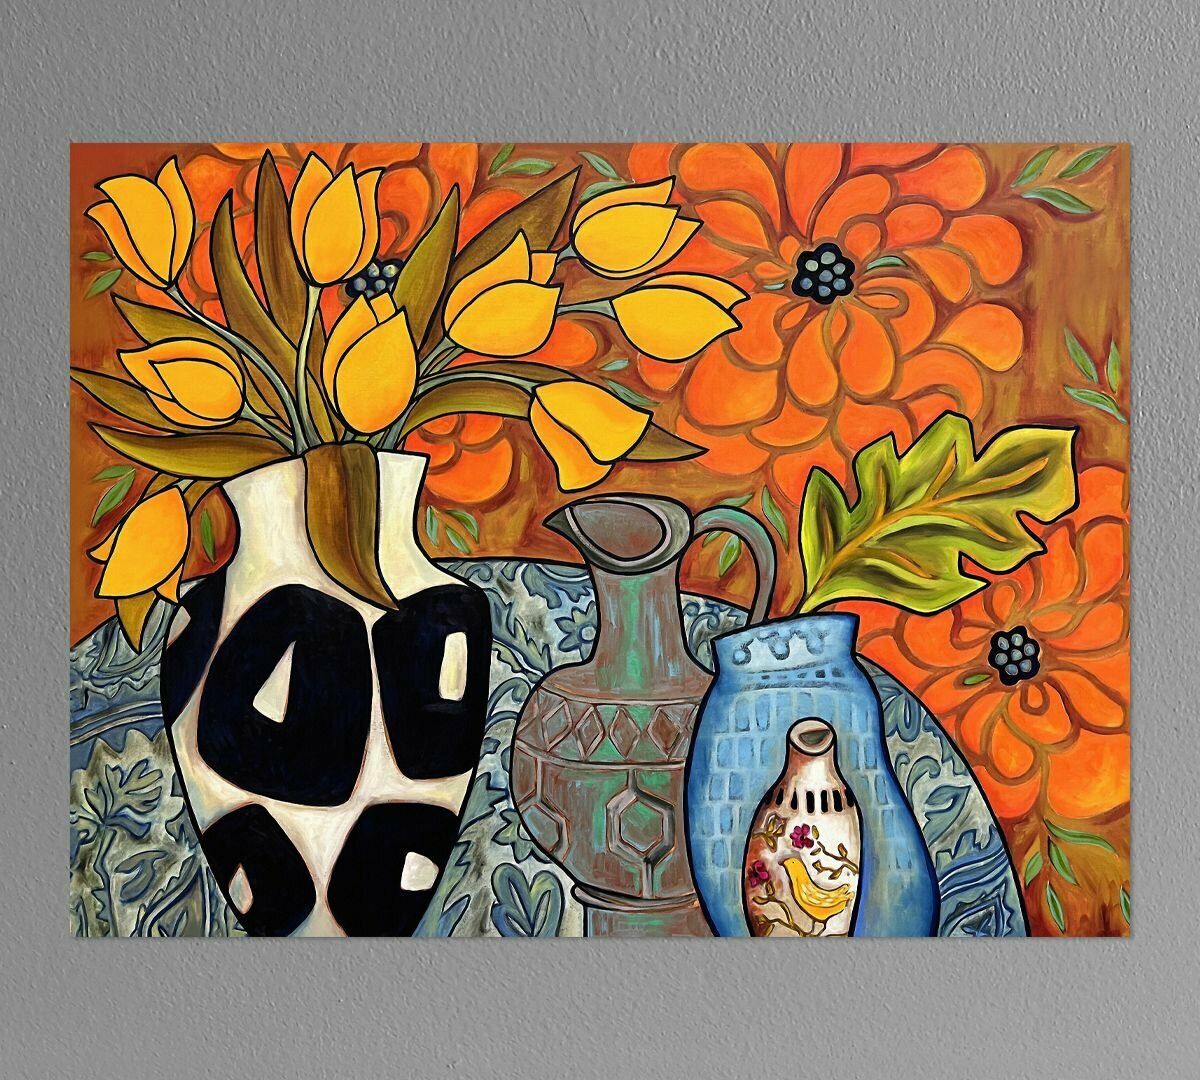 Картина для интерьера "Вазы и цветы" Элиза Боунер 40х60 см натуральный холст. Коллекция - натюрморт, кубизм, пейзаж, мексиканская живопись.